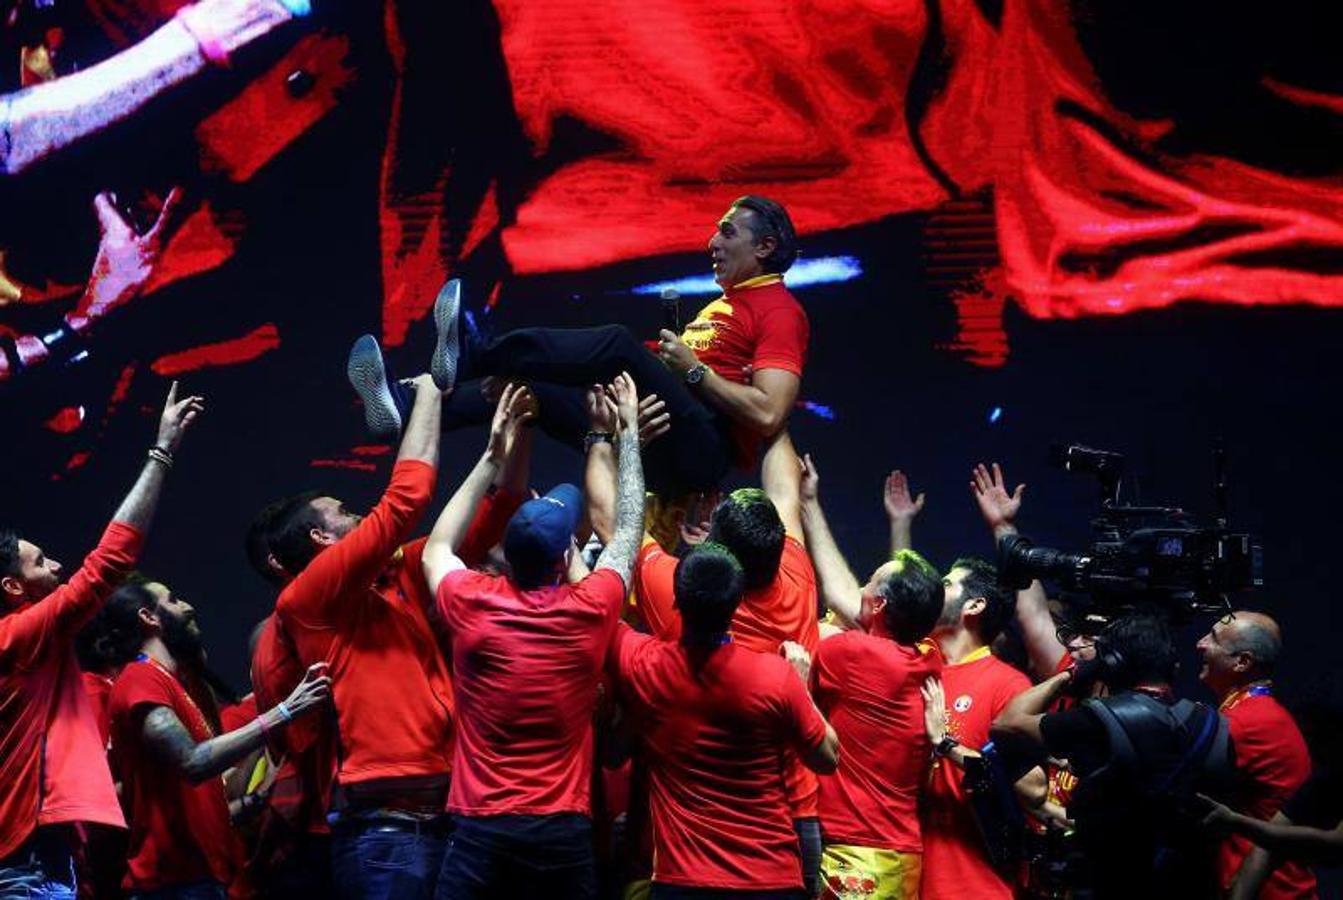 La selección española de baloncesto celebró en Madrid y por todo lo alto la segunda corona mundial de su historia